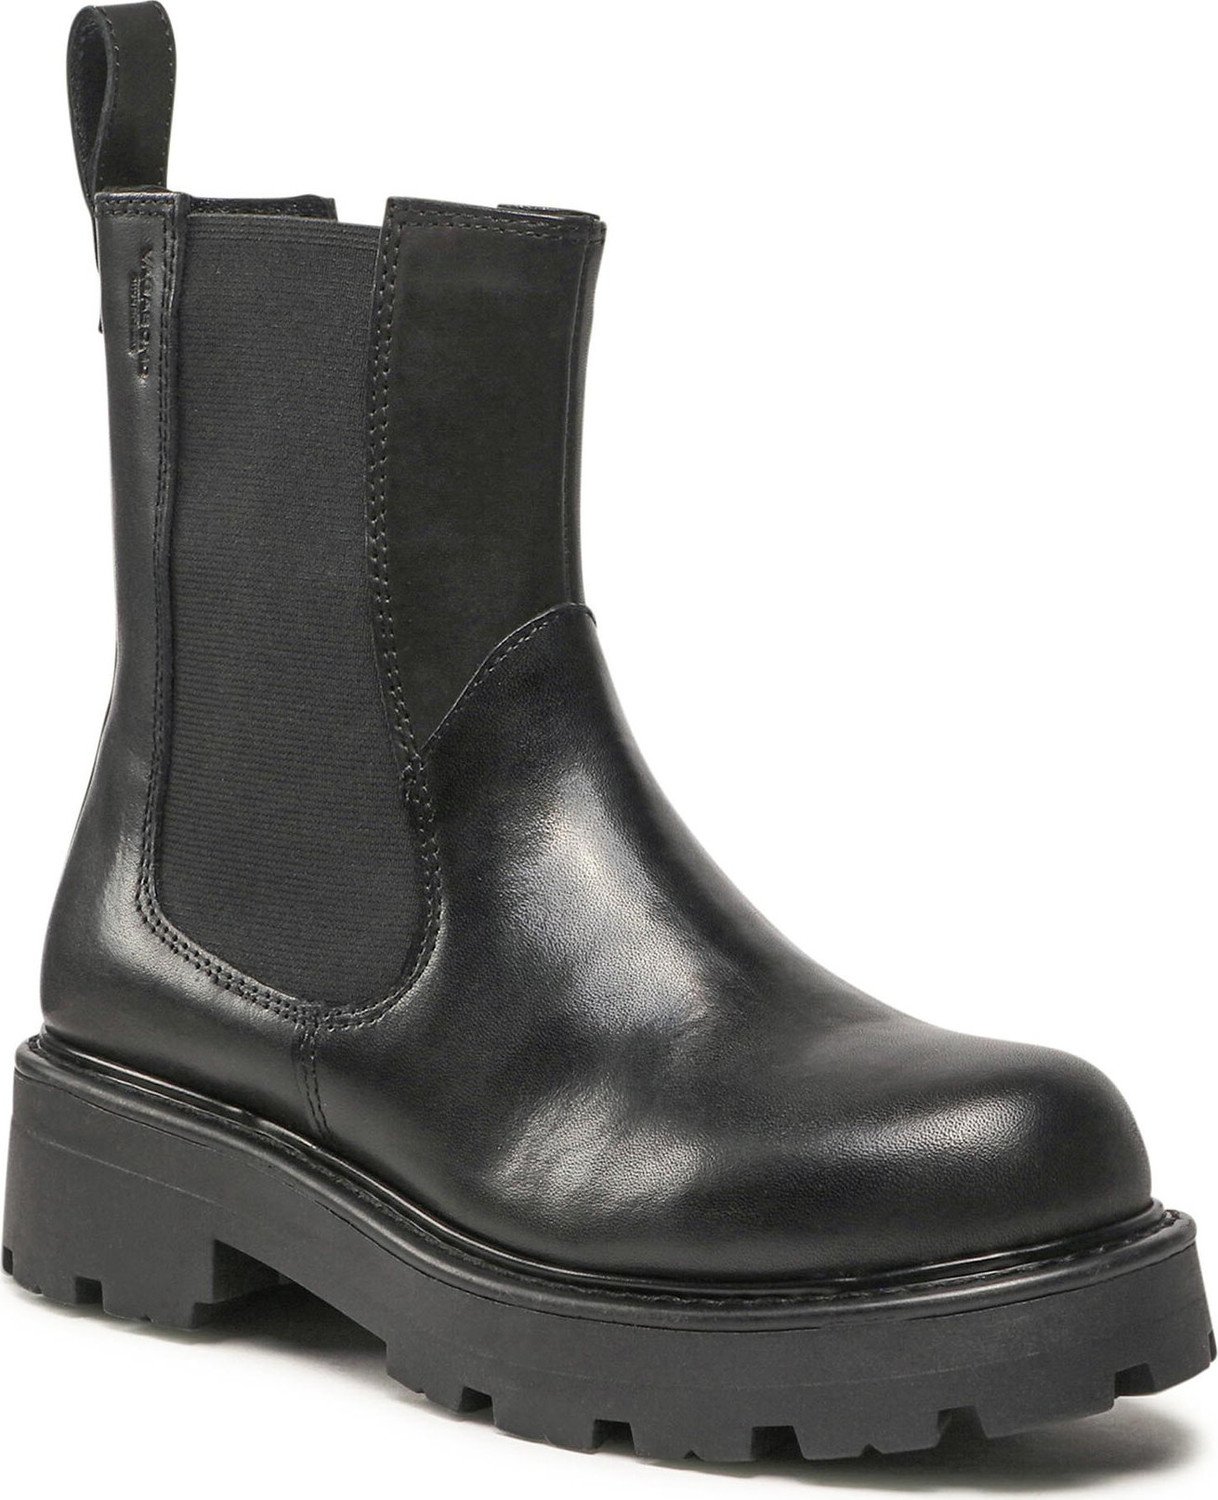 Kotníková obuv s elastickým prvkem Vagabond Cosmo 2.0 5249-601-20 Black